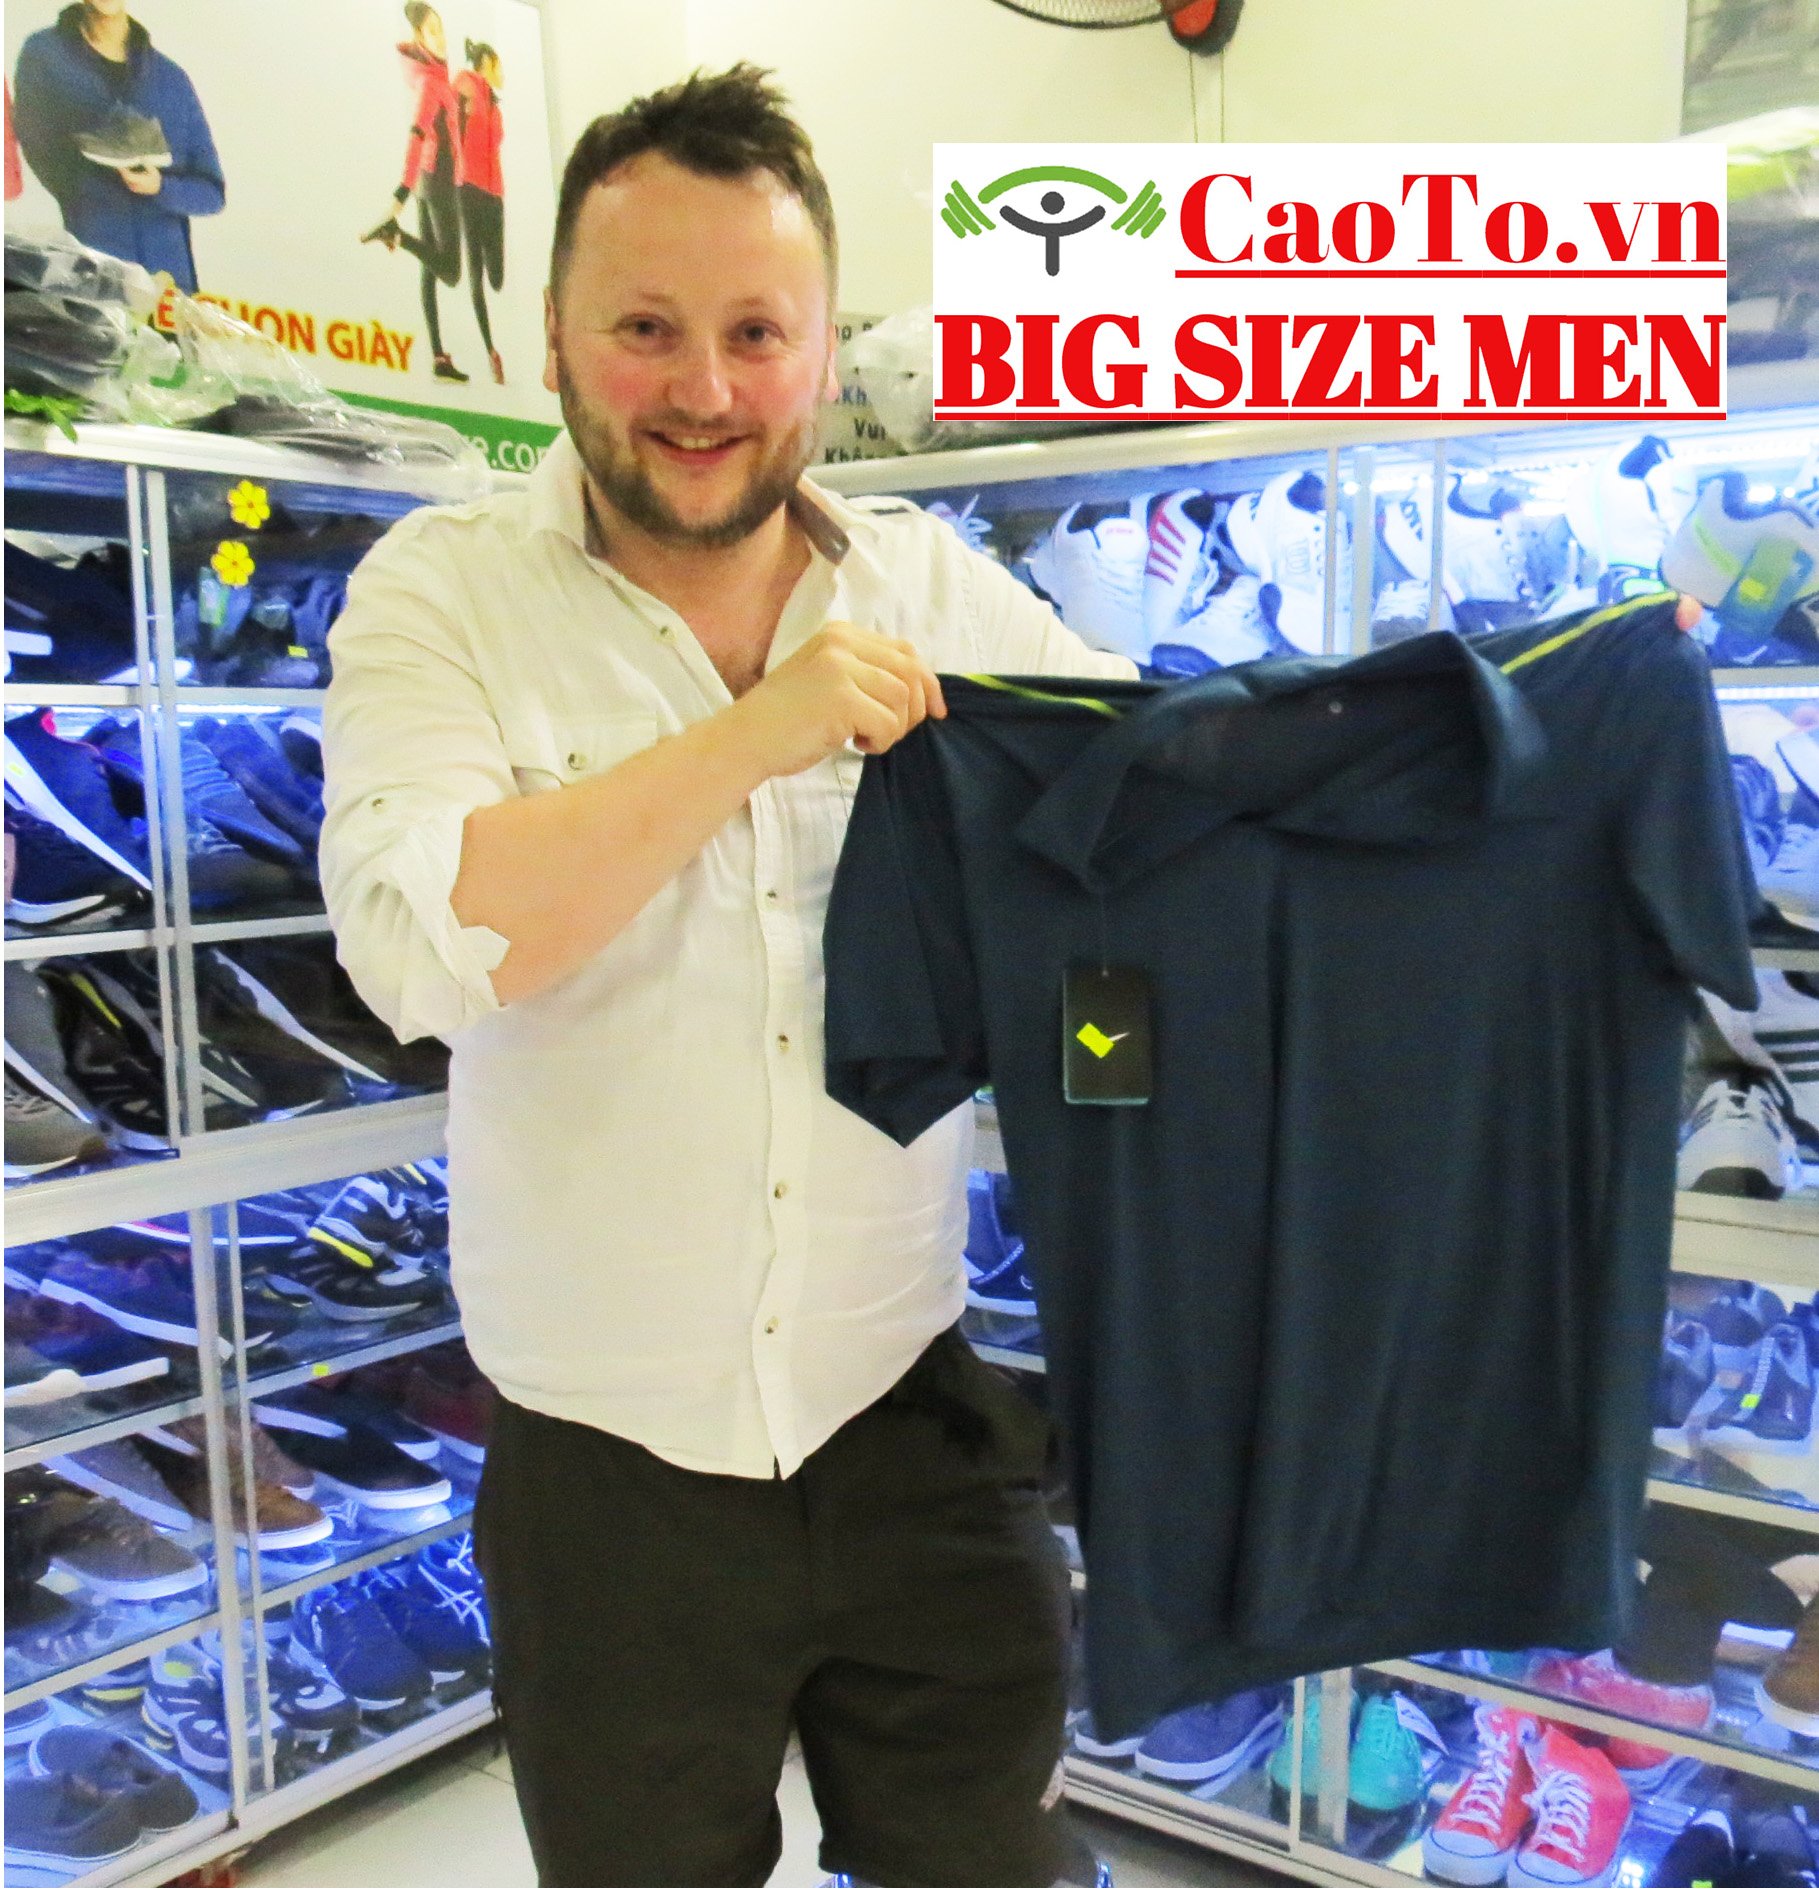 CAO TO BIG MEN Trung Tâm Giày Dép- Thời Trang Big Size Nam